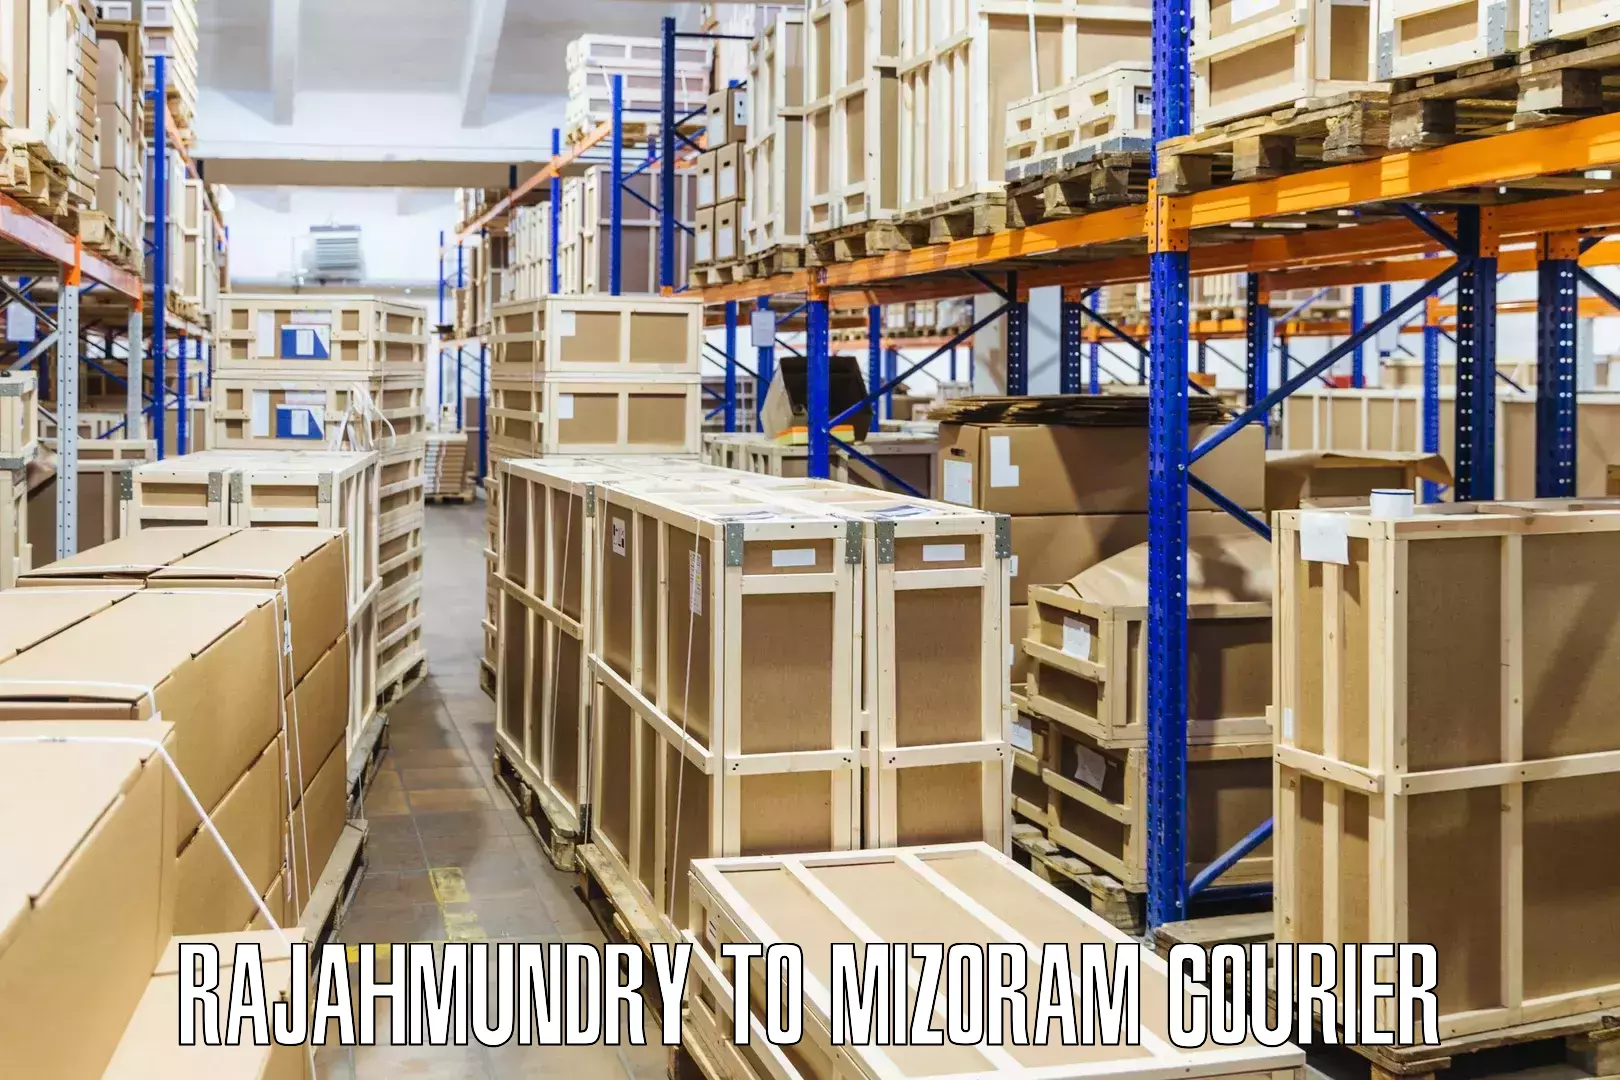 Optimized shipping routes Rajahmundry to Khawzawl